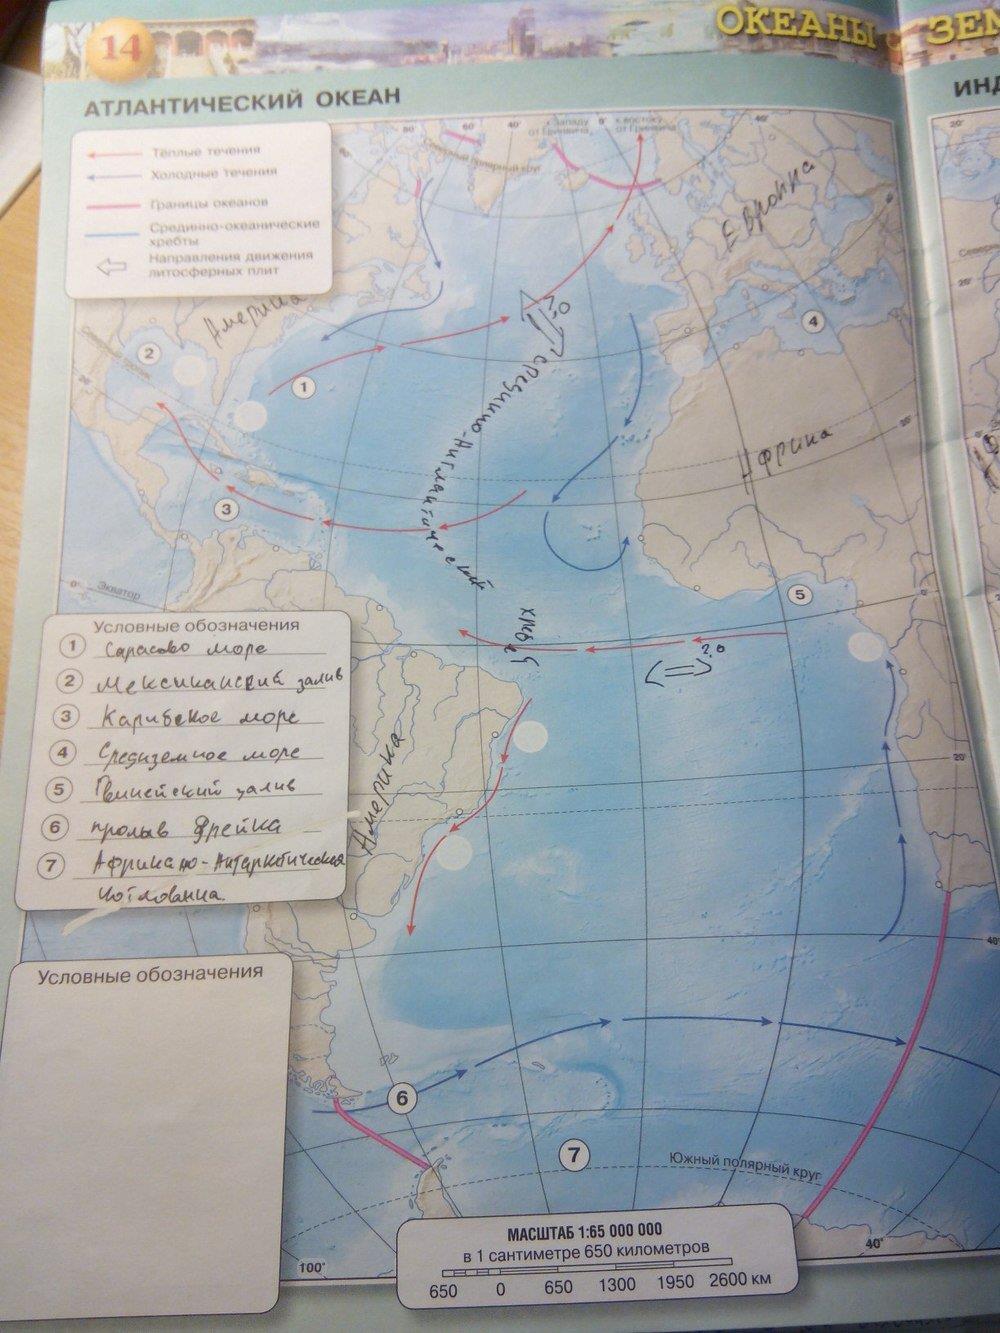 География контурные карты 7 класс страница 21. Атлантический океан 7 класс география контурная карта. Атлантический океан контурная карта 7 класс готовая стр 14 Котляр. Контурная карта по географии 7 класс сфера стр 17 индийский океан.